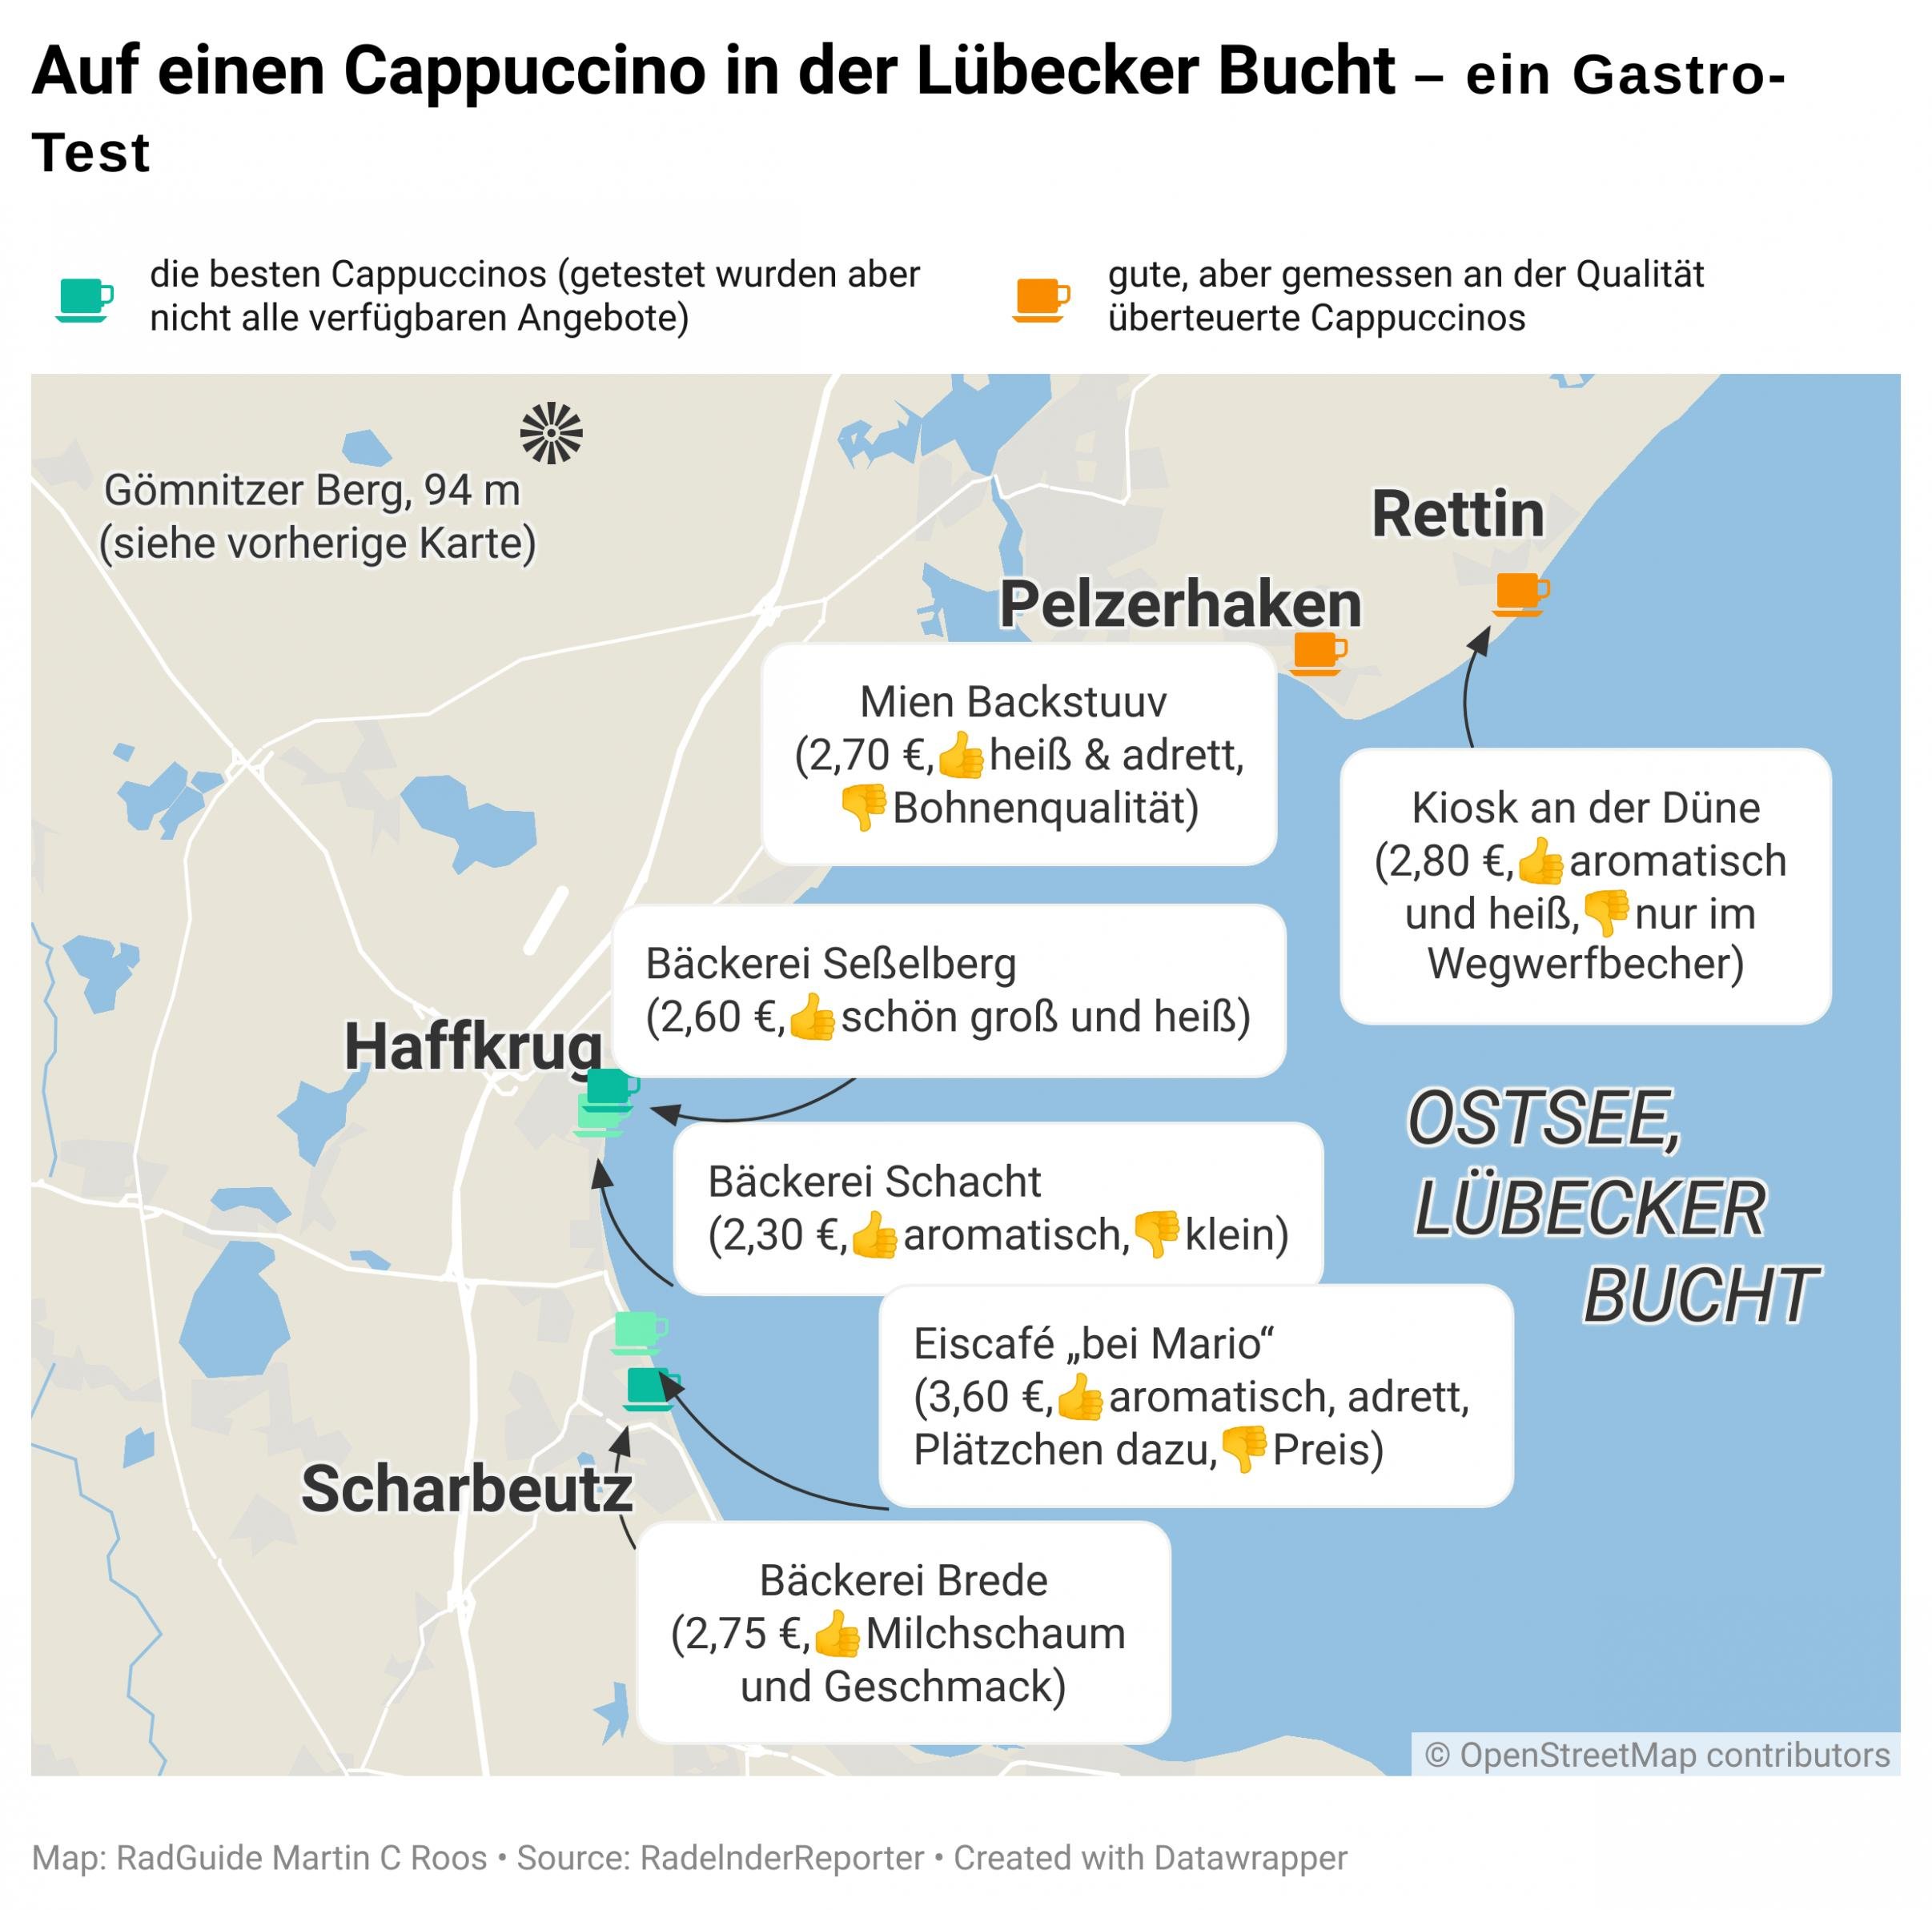 Übersichtskarte der Lübecker Bucht mit eingefügten Test-Eintragungen über konsumierte Cappuccinos. Am besten schneiden in Scharbeutz die Bäckerei Brede sowie in Haffkrug die Bäckerei Seßelberg ab.